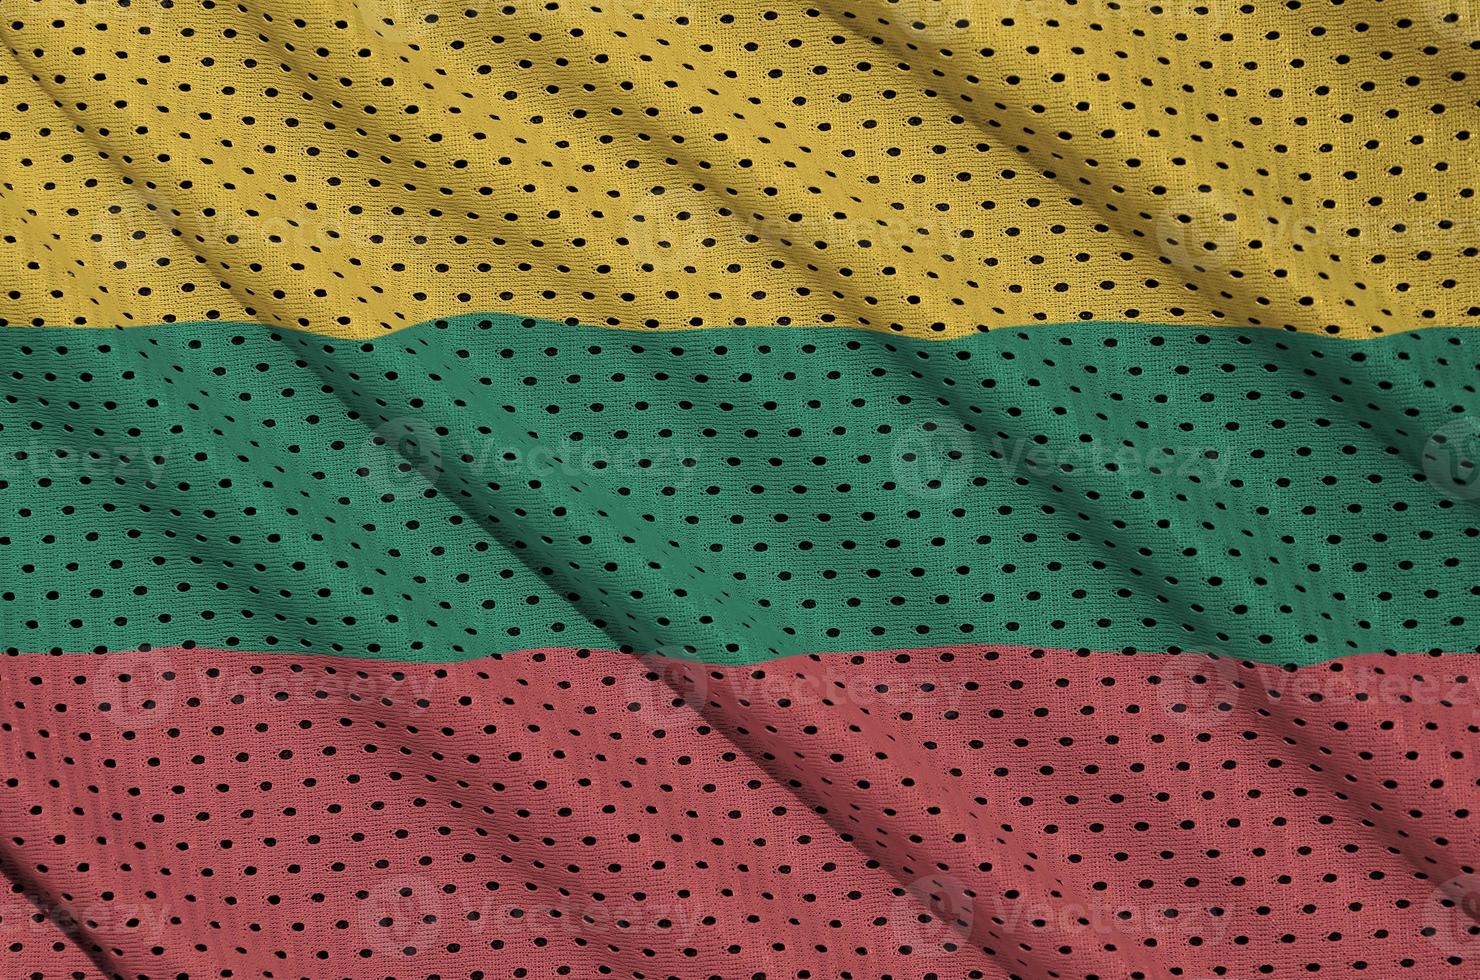 bandeira da lituânia impressa em tecido de malha esportiva de poliéster nylon foto